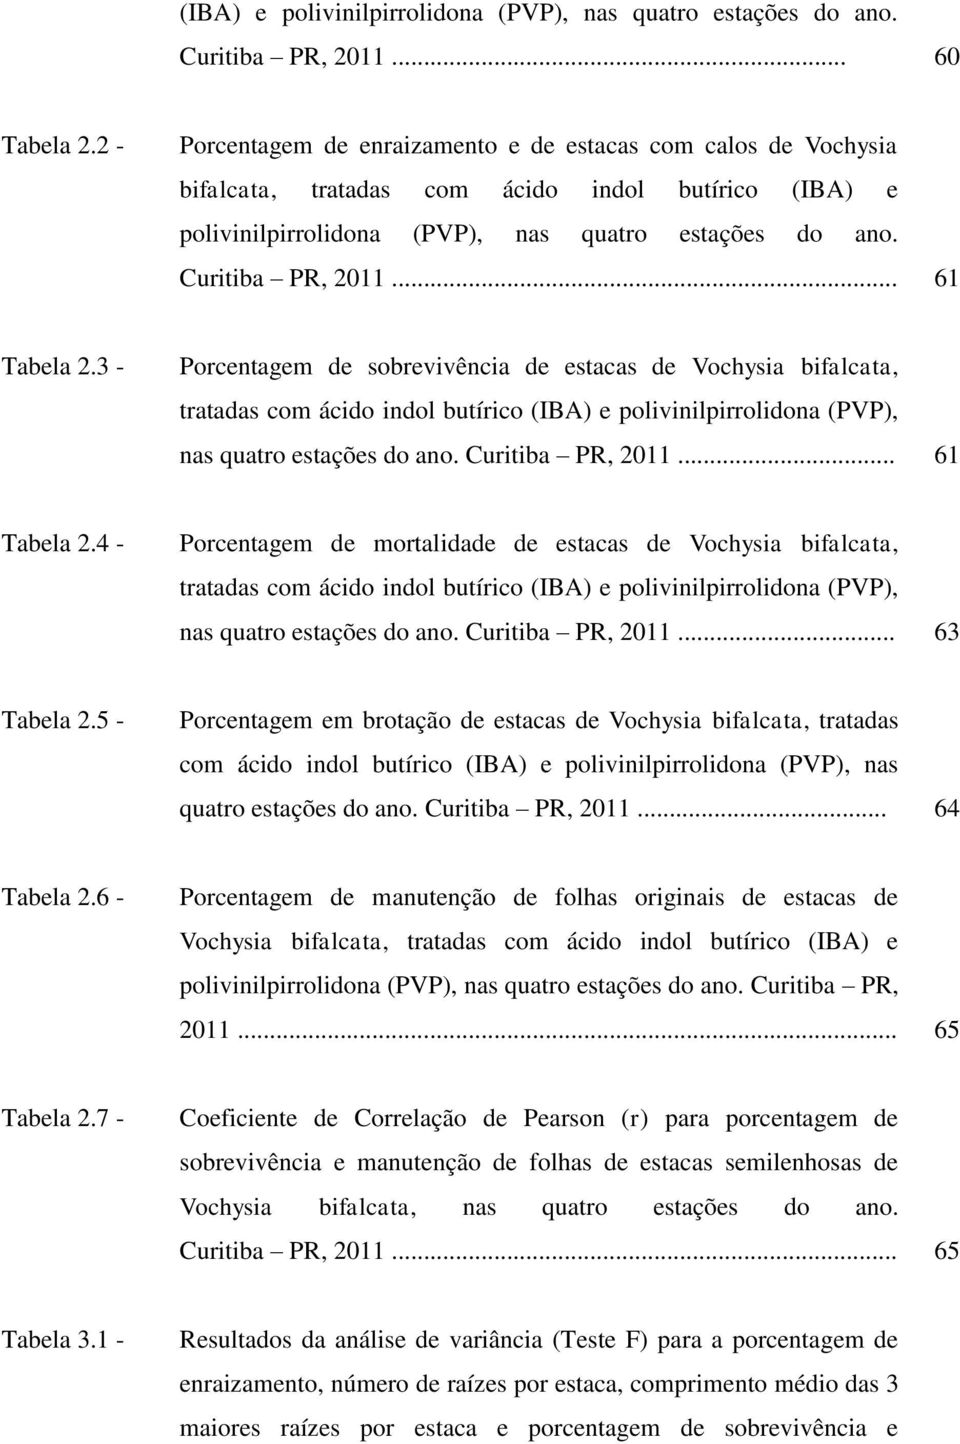 .. 61 Tabela 2.3 - Porcentagem de sobrevivência de estacas de Vochysia bifalcata, tratadas com ácido indol butírico (IBA) e polivinilpirrolidona (PVP), nas quatro estações do ano. Curitiba PR, 2011.